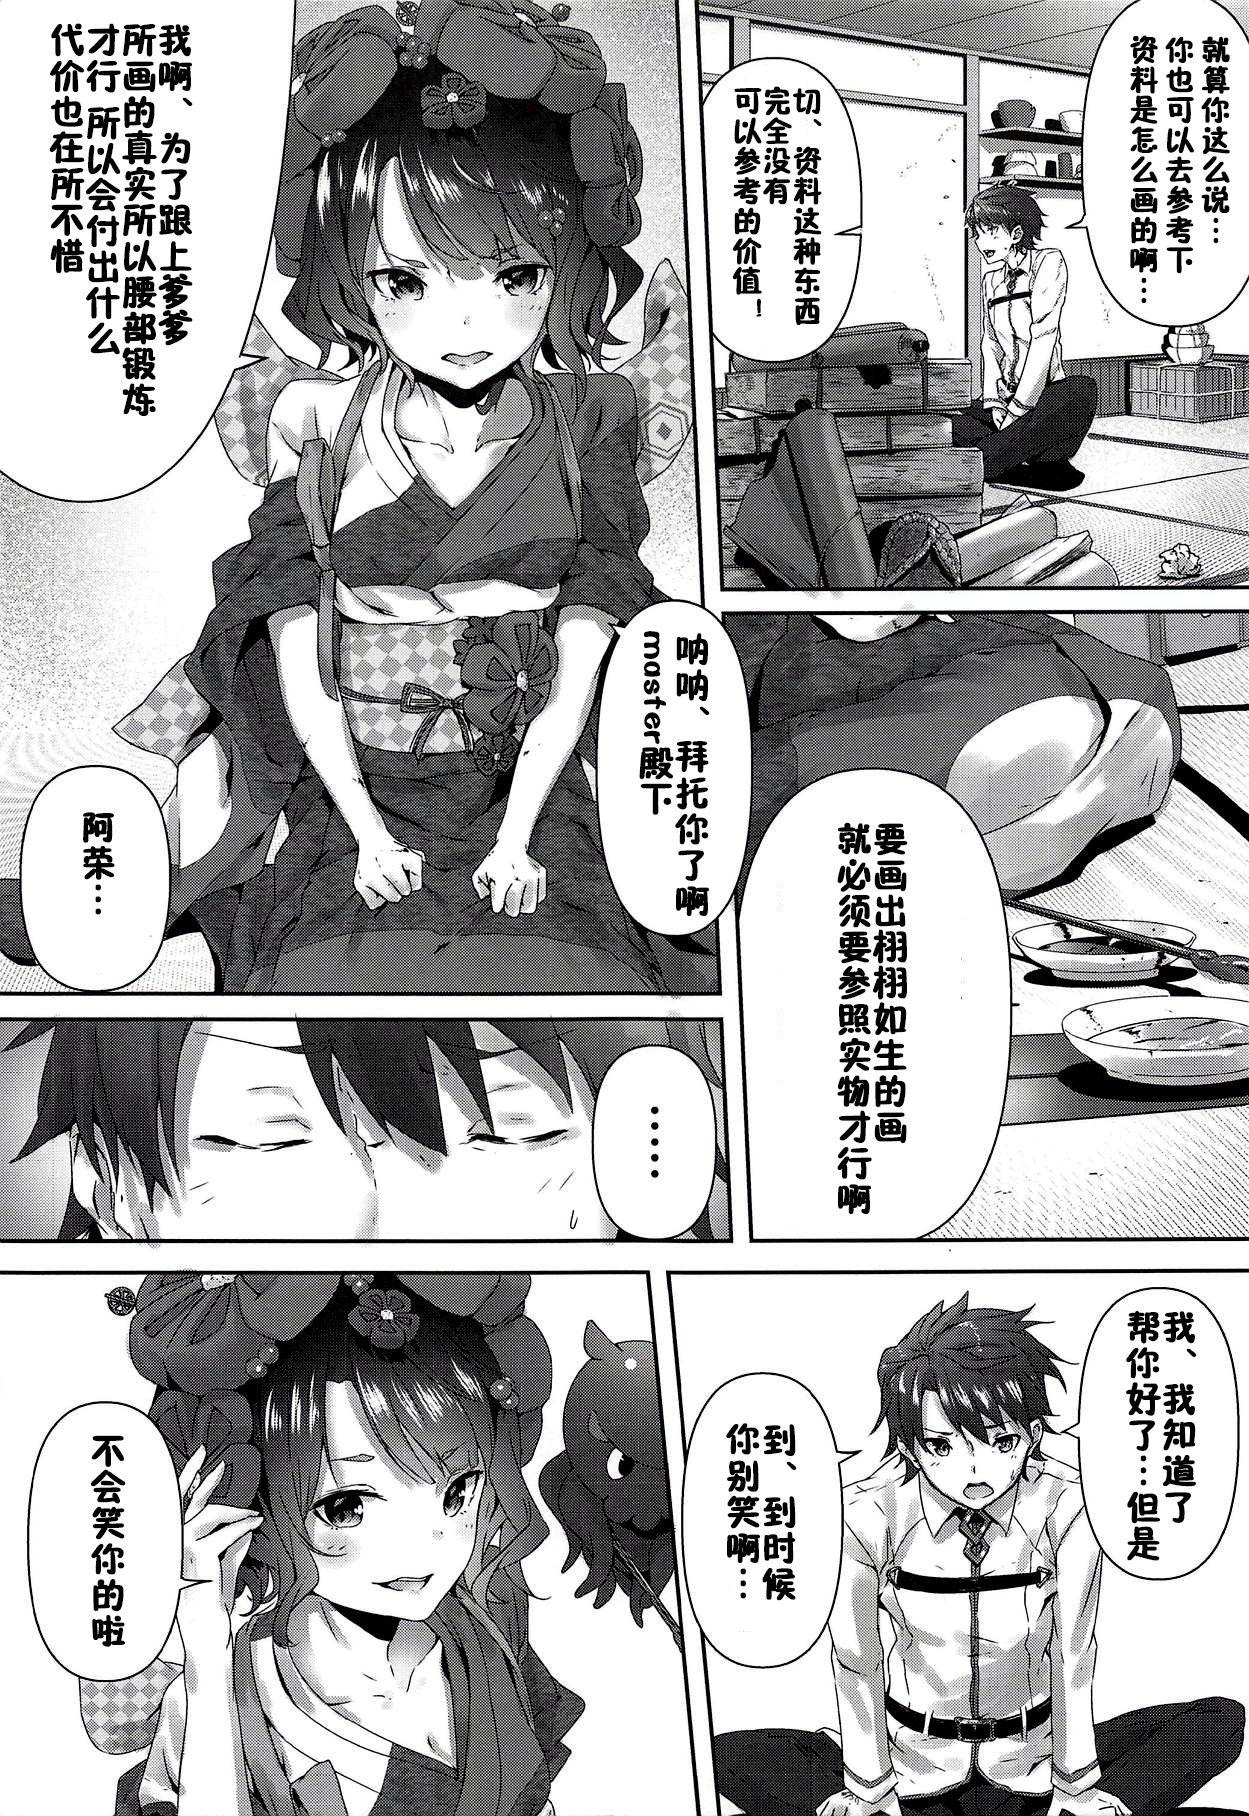 Peituda Katsushika Oi no Manpuku Wagojin + Omakebon - Fate grand order Sex Massage - Page 4